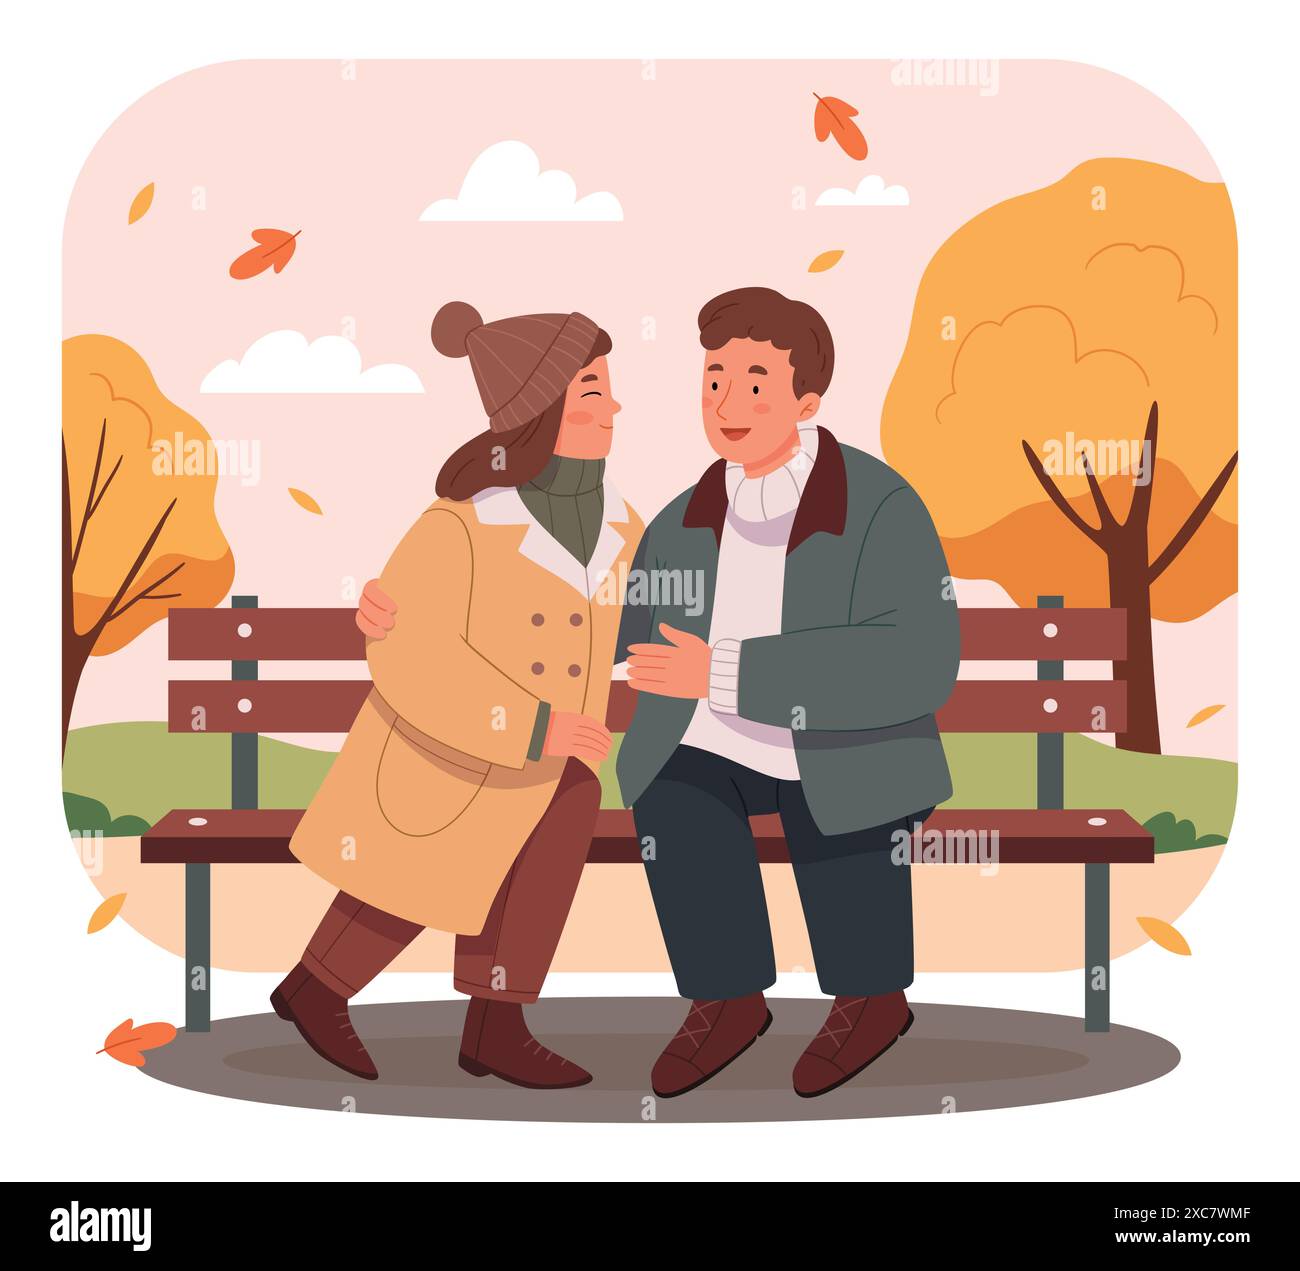 Homme et femme ont rendez-vous dans le parc. Couple romantique assis sur un banc et souriant. Deux amants passent du temps ensemble. Illustration vectorielle dans la voiture plate Illustration de Vecteur